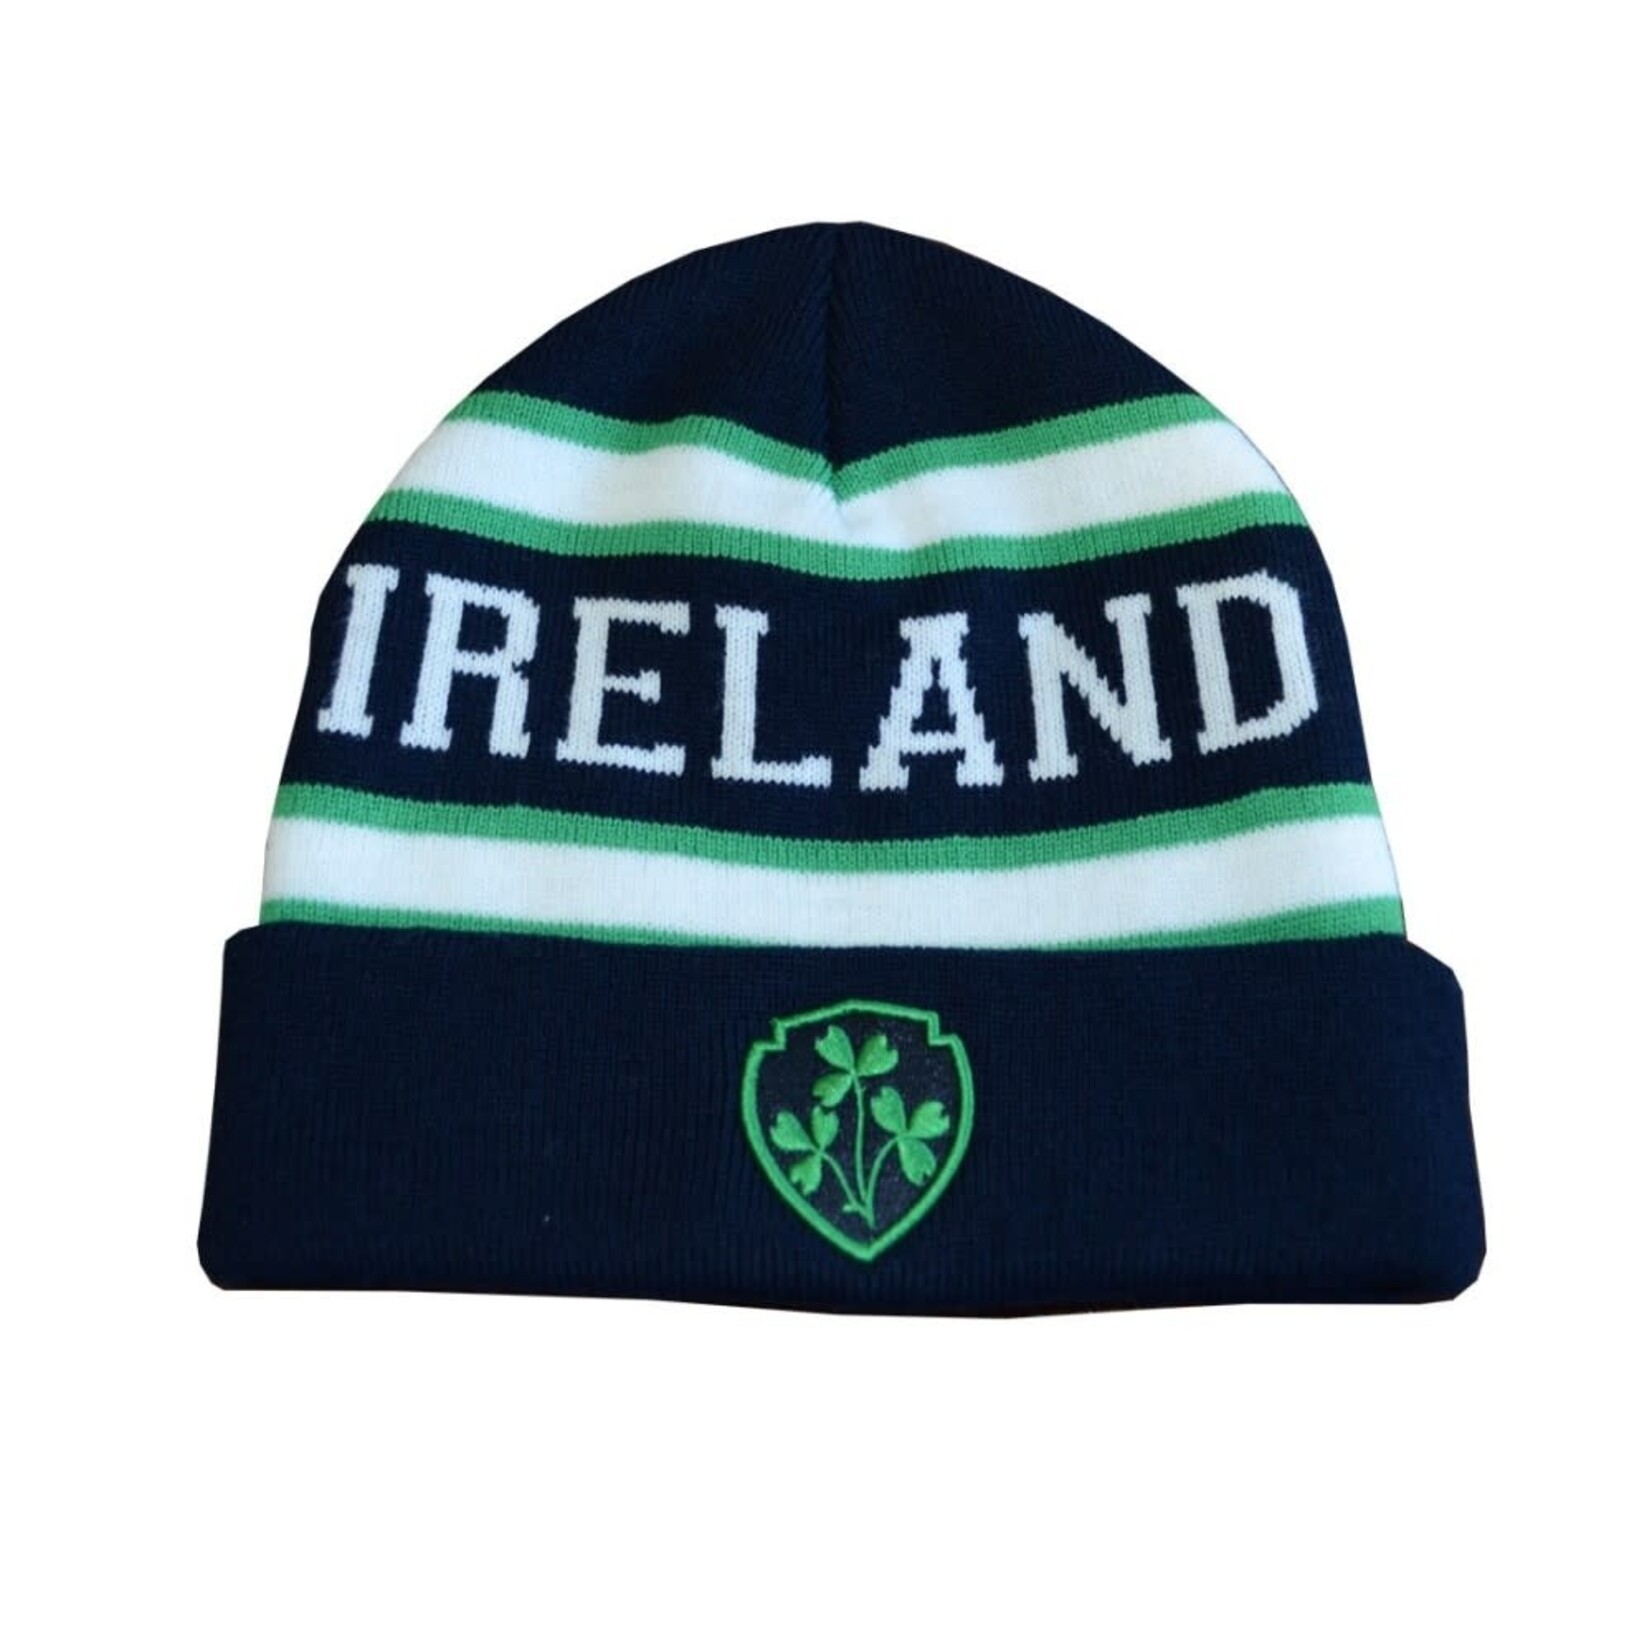 Lansdowne Navy/Green/White Ireland Knit Hat Adult